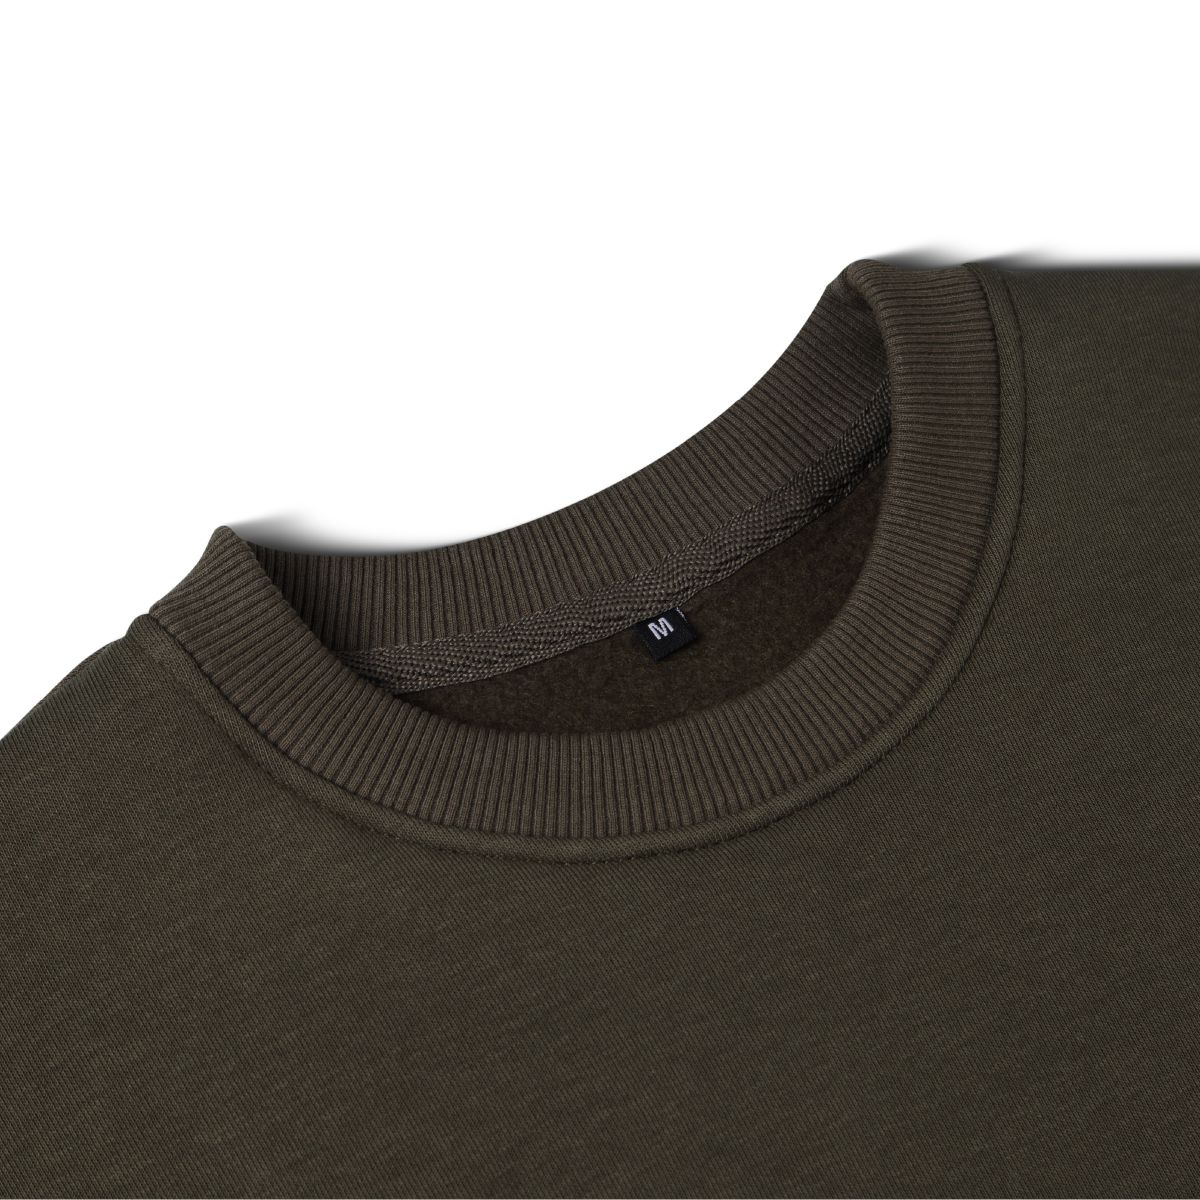 Світшот Base Soft Sweatshirt. Вільний стиль. Колір Олива/Olive. Розмір M 7